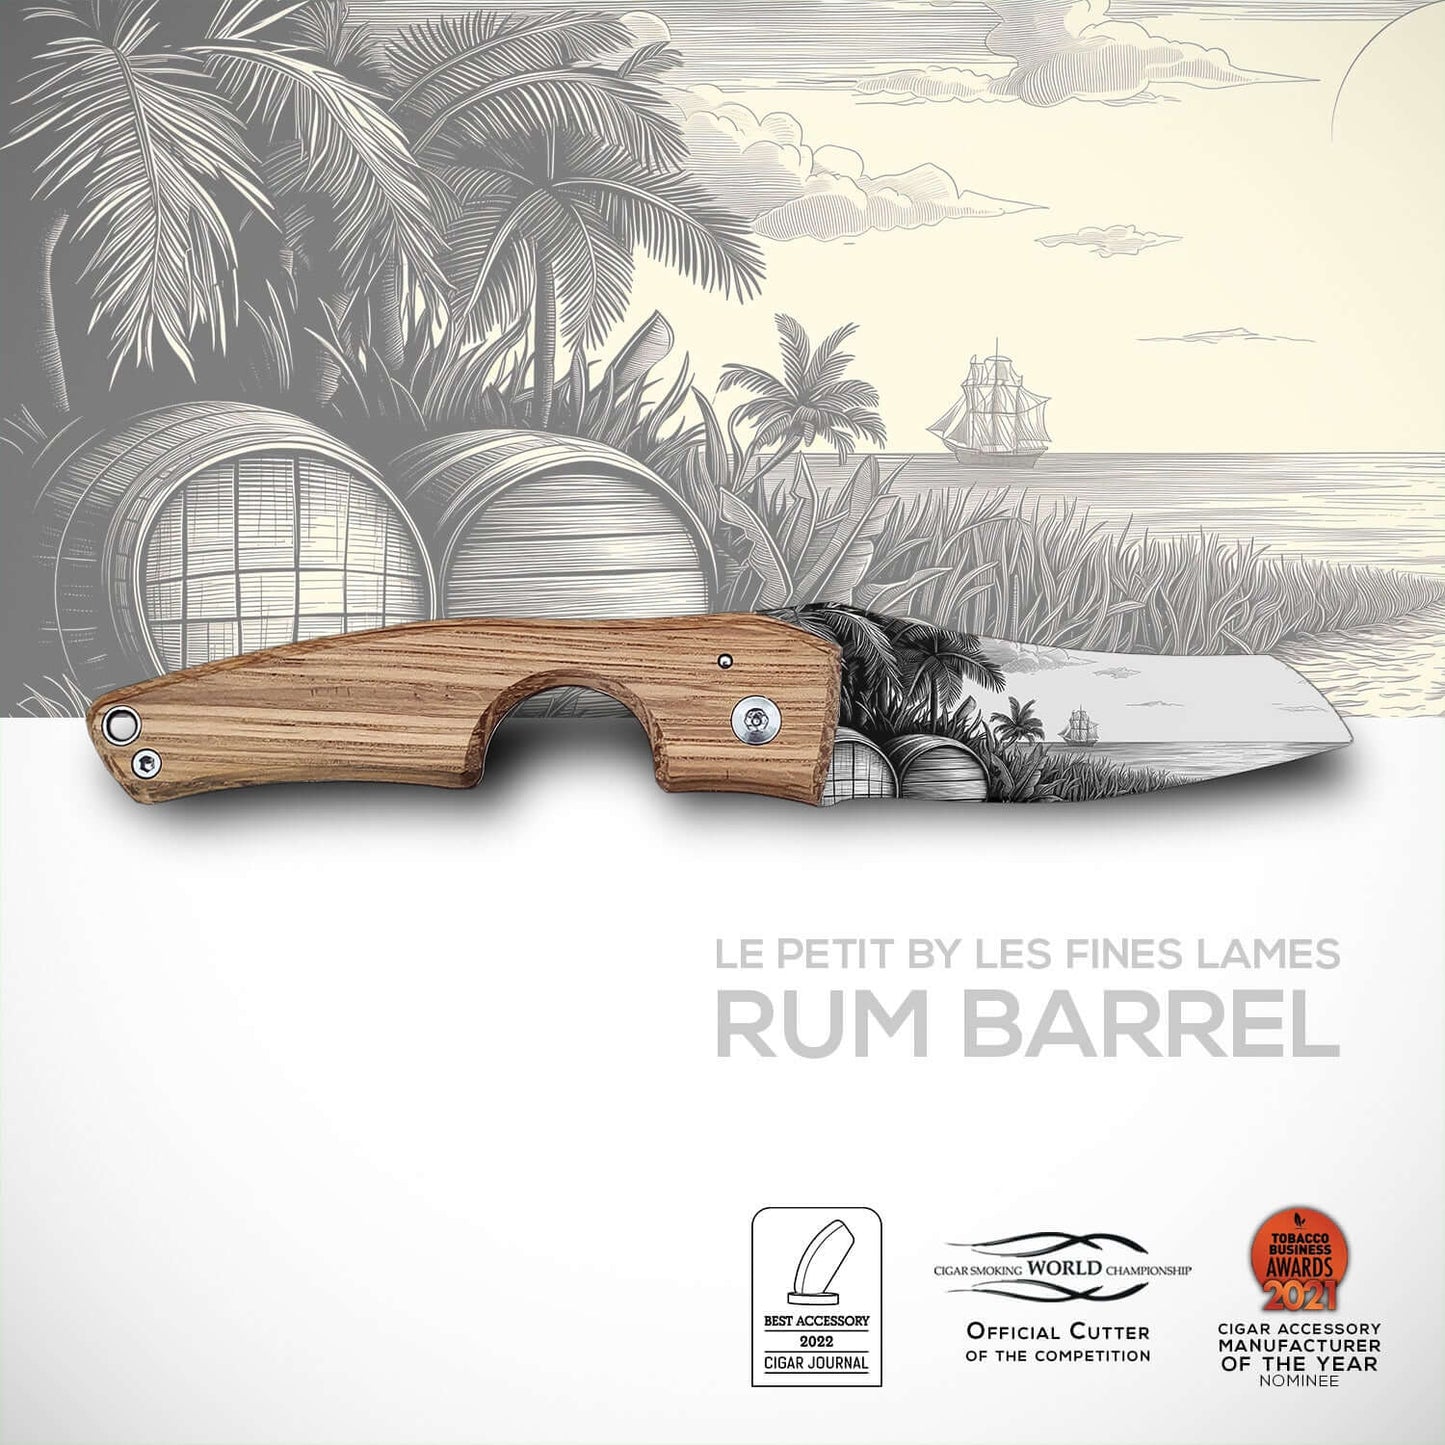 Le Petit Rum Barrel by Les Fines Lames